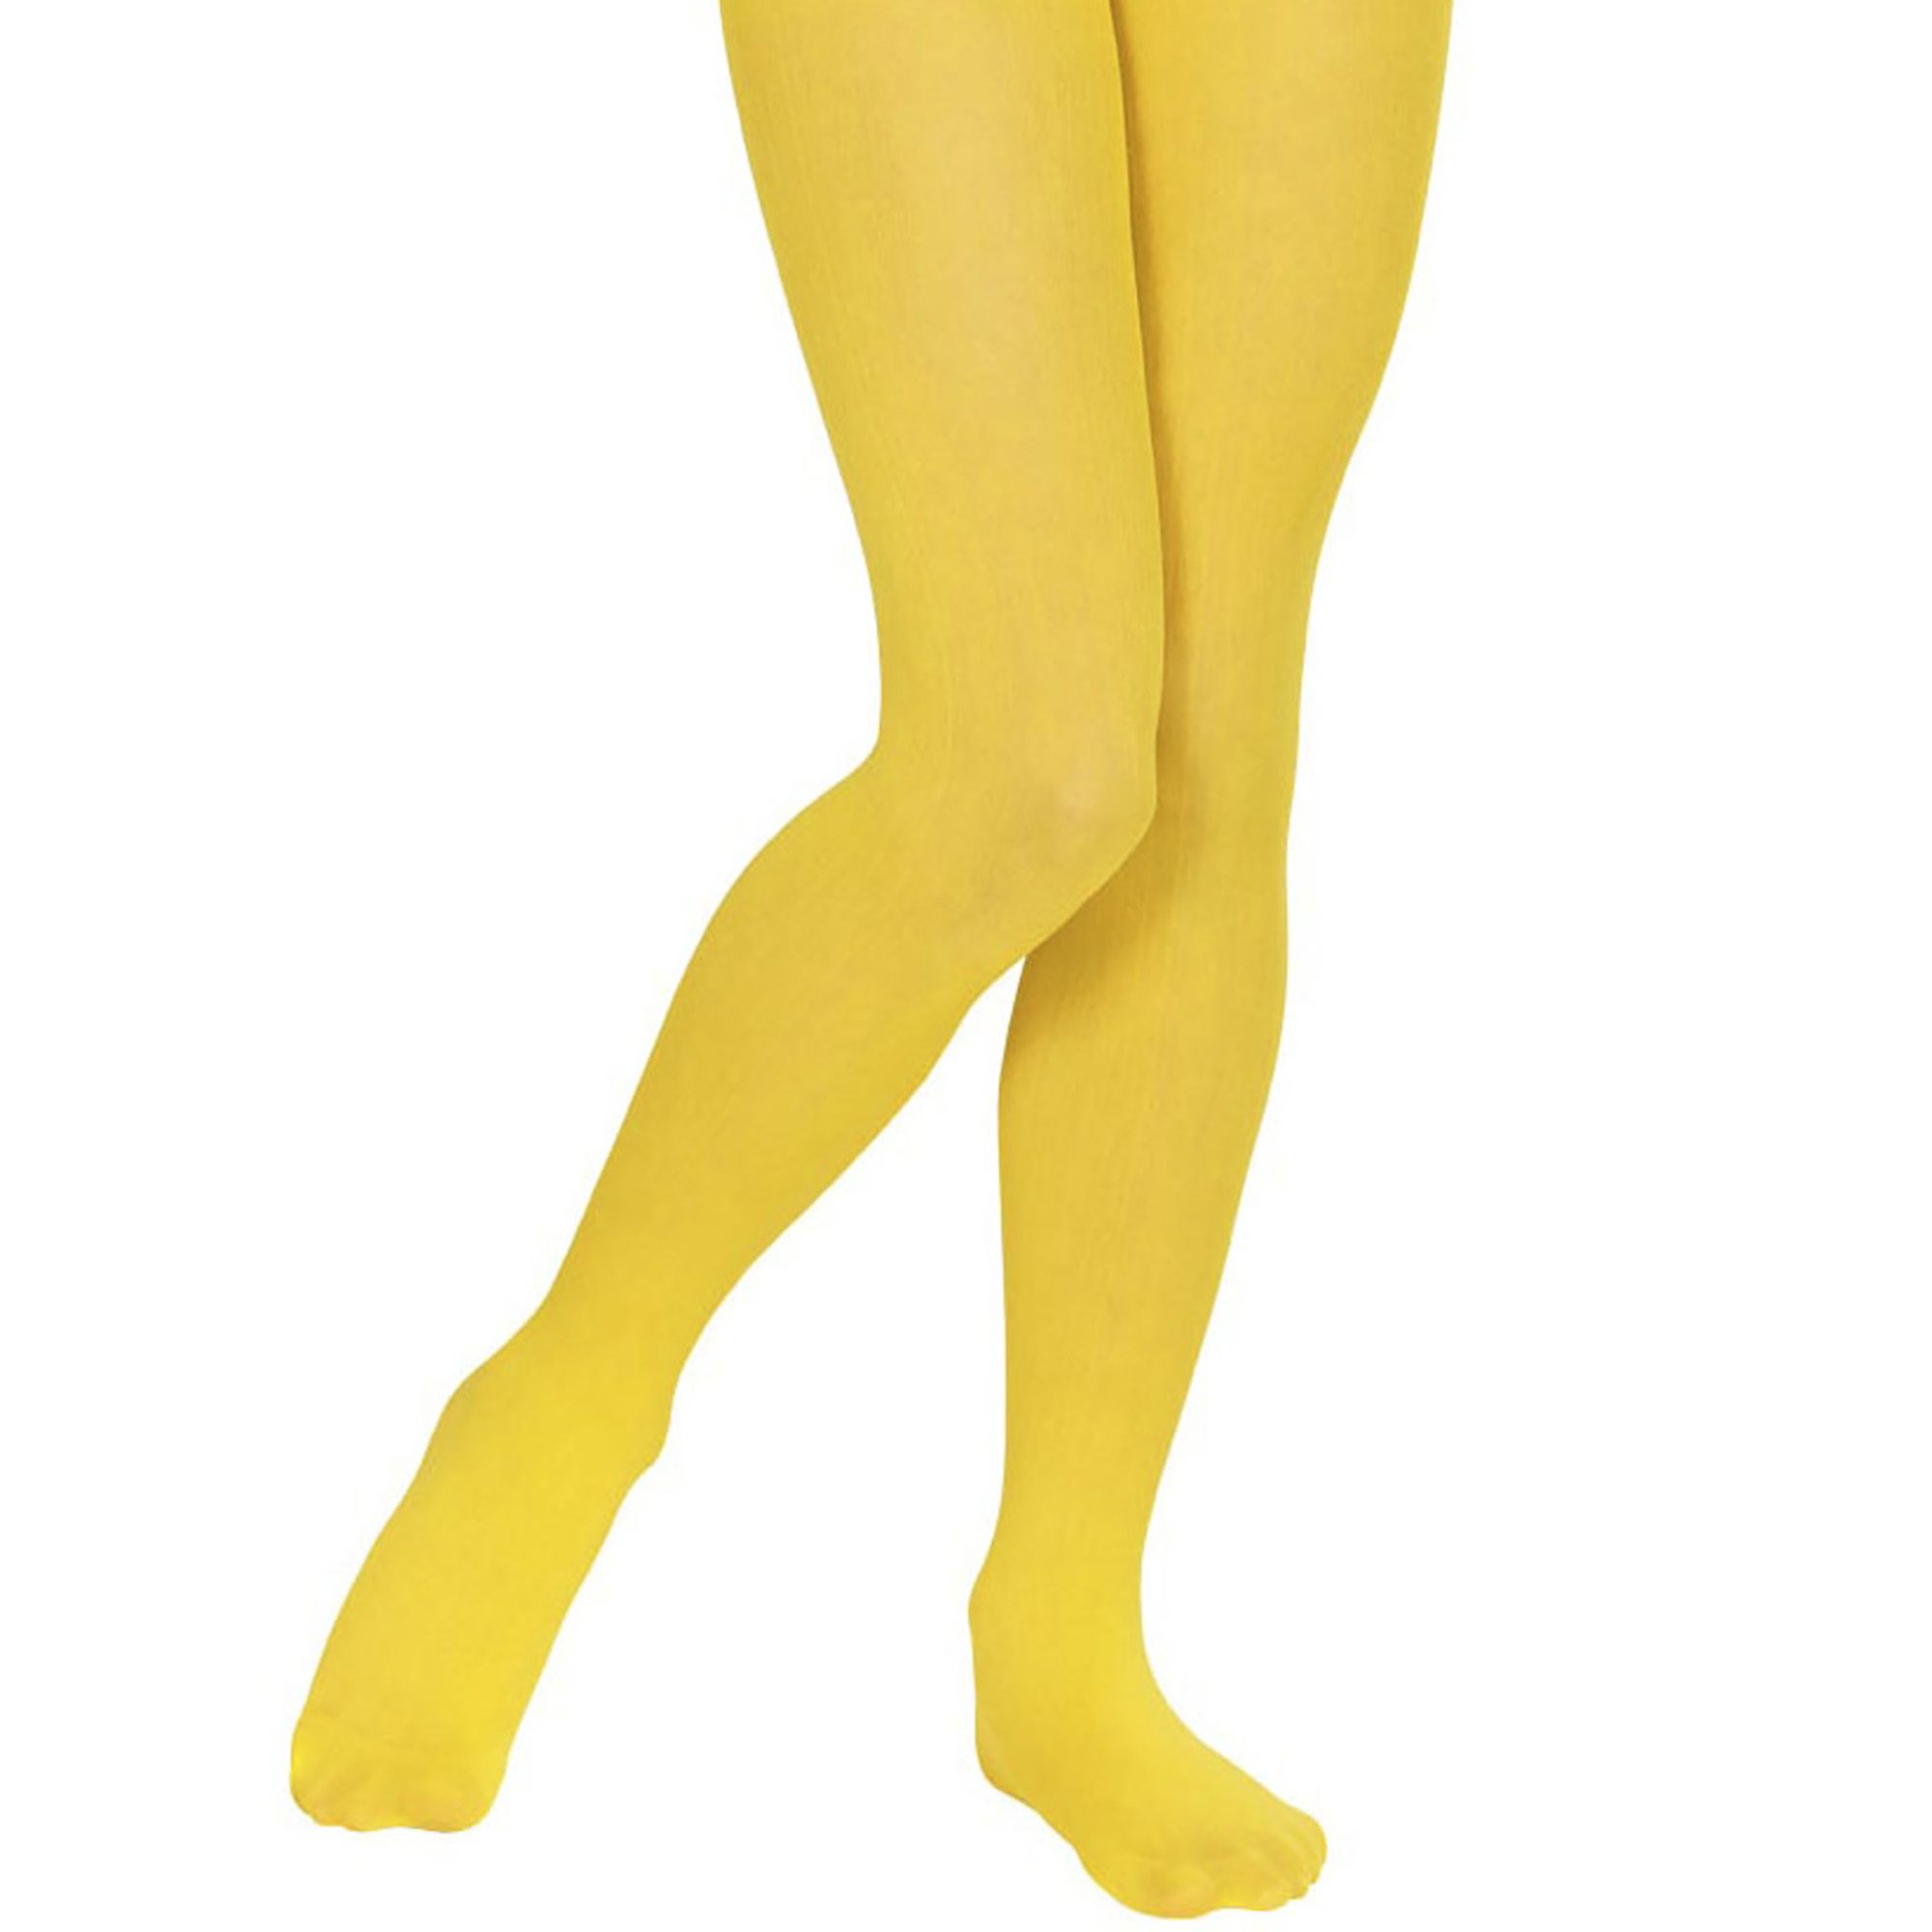 Kinderpanty geel